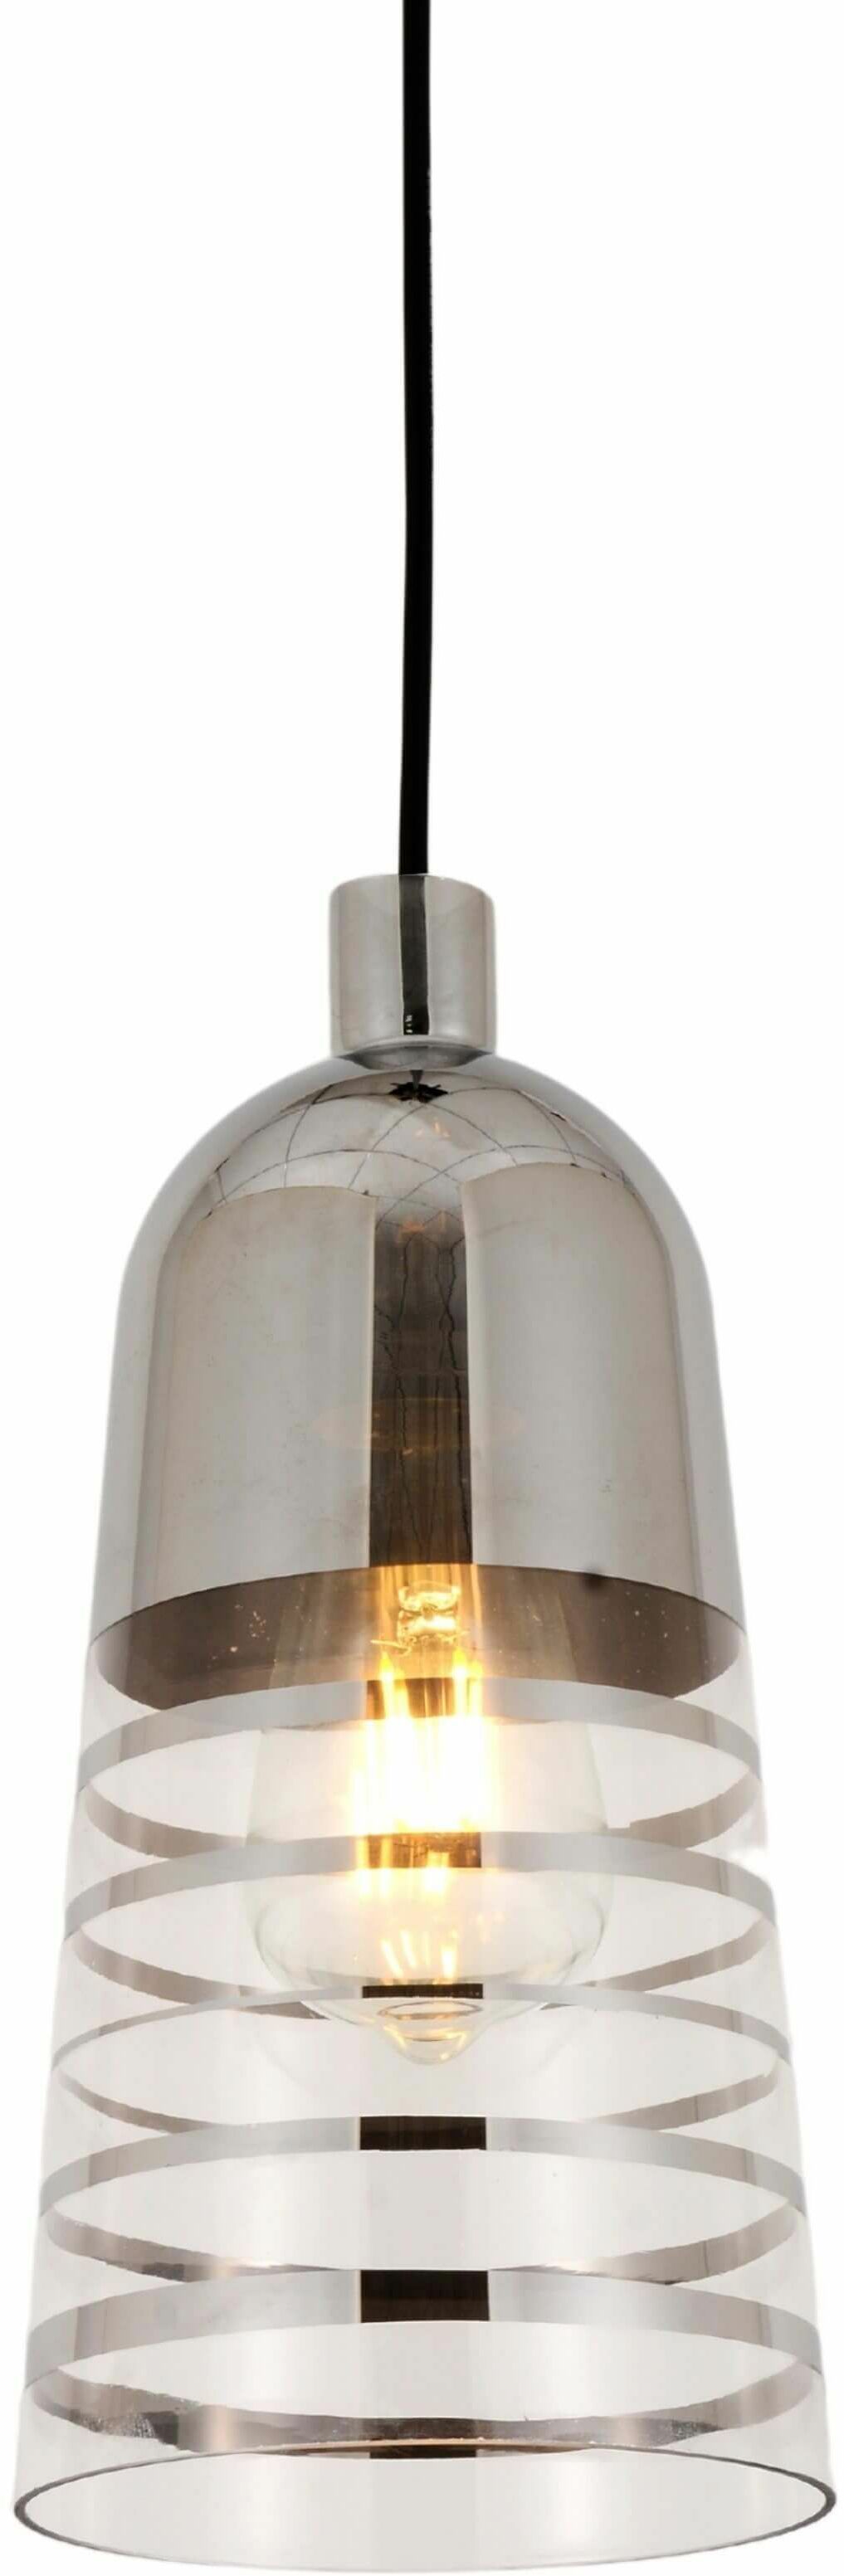 Etrica nowoczesna lampa wisząca chrom LDP 6815-1 (CHR) Lumina Deco // Rabaty w koszyku i darmowa dostawa od 299zł !